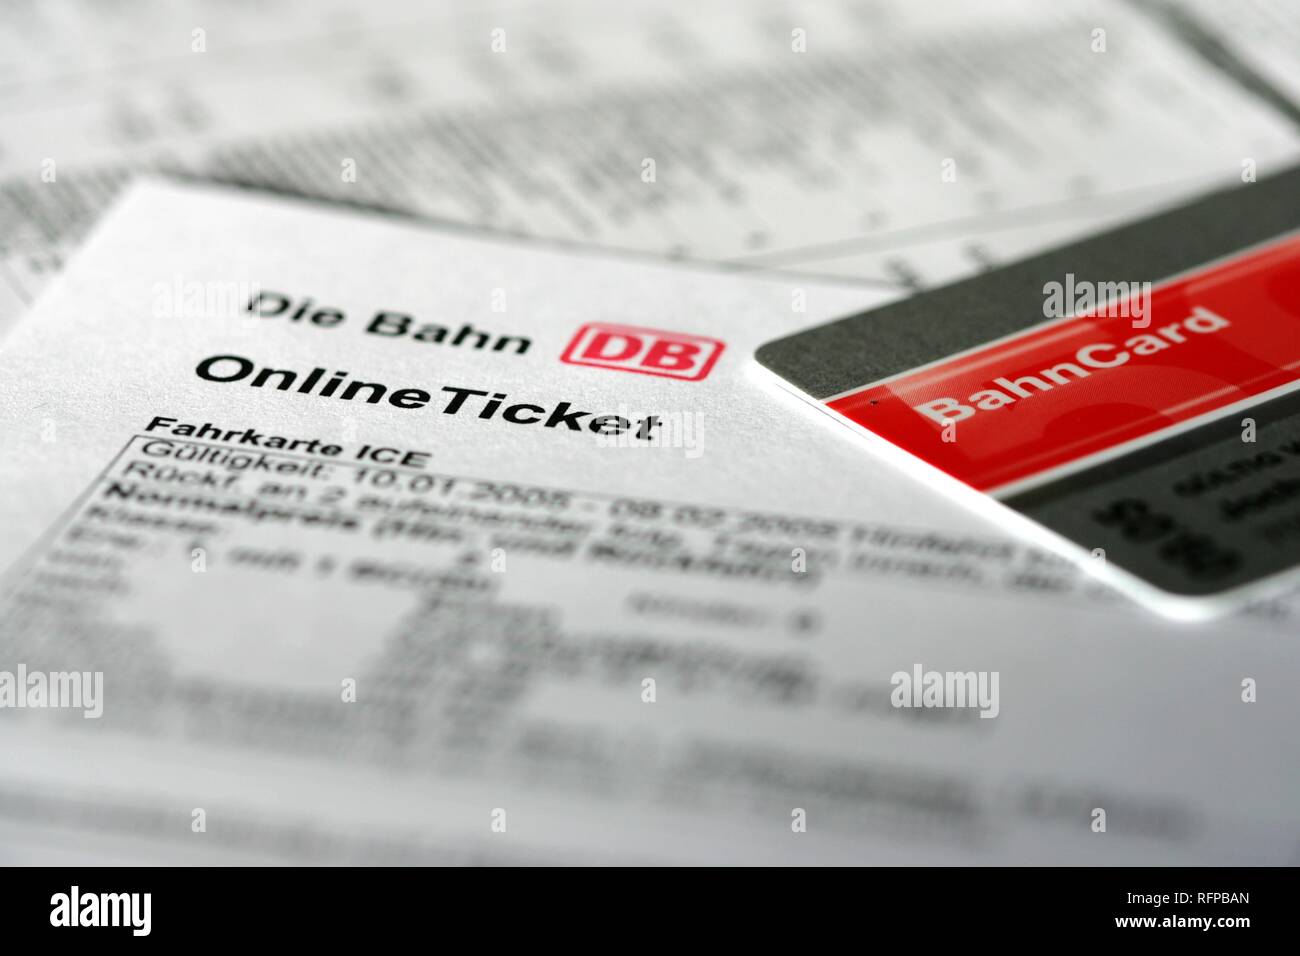 DEU, Allemagne : billet de train en ligne. Réservation sur internet, avec une remise spéciale, carte Bahncard. Banque D'Images